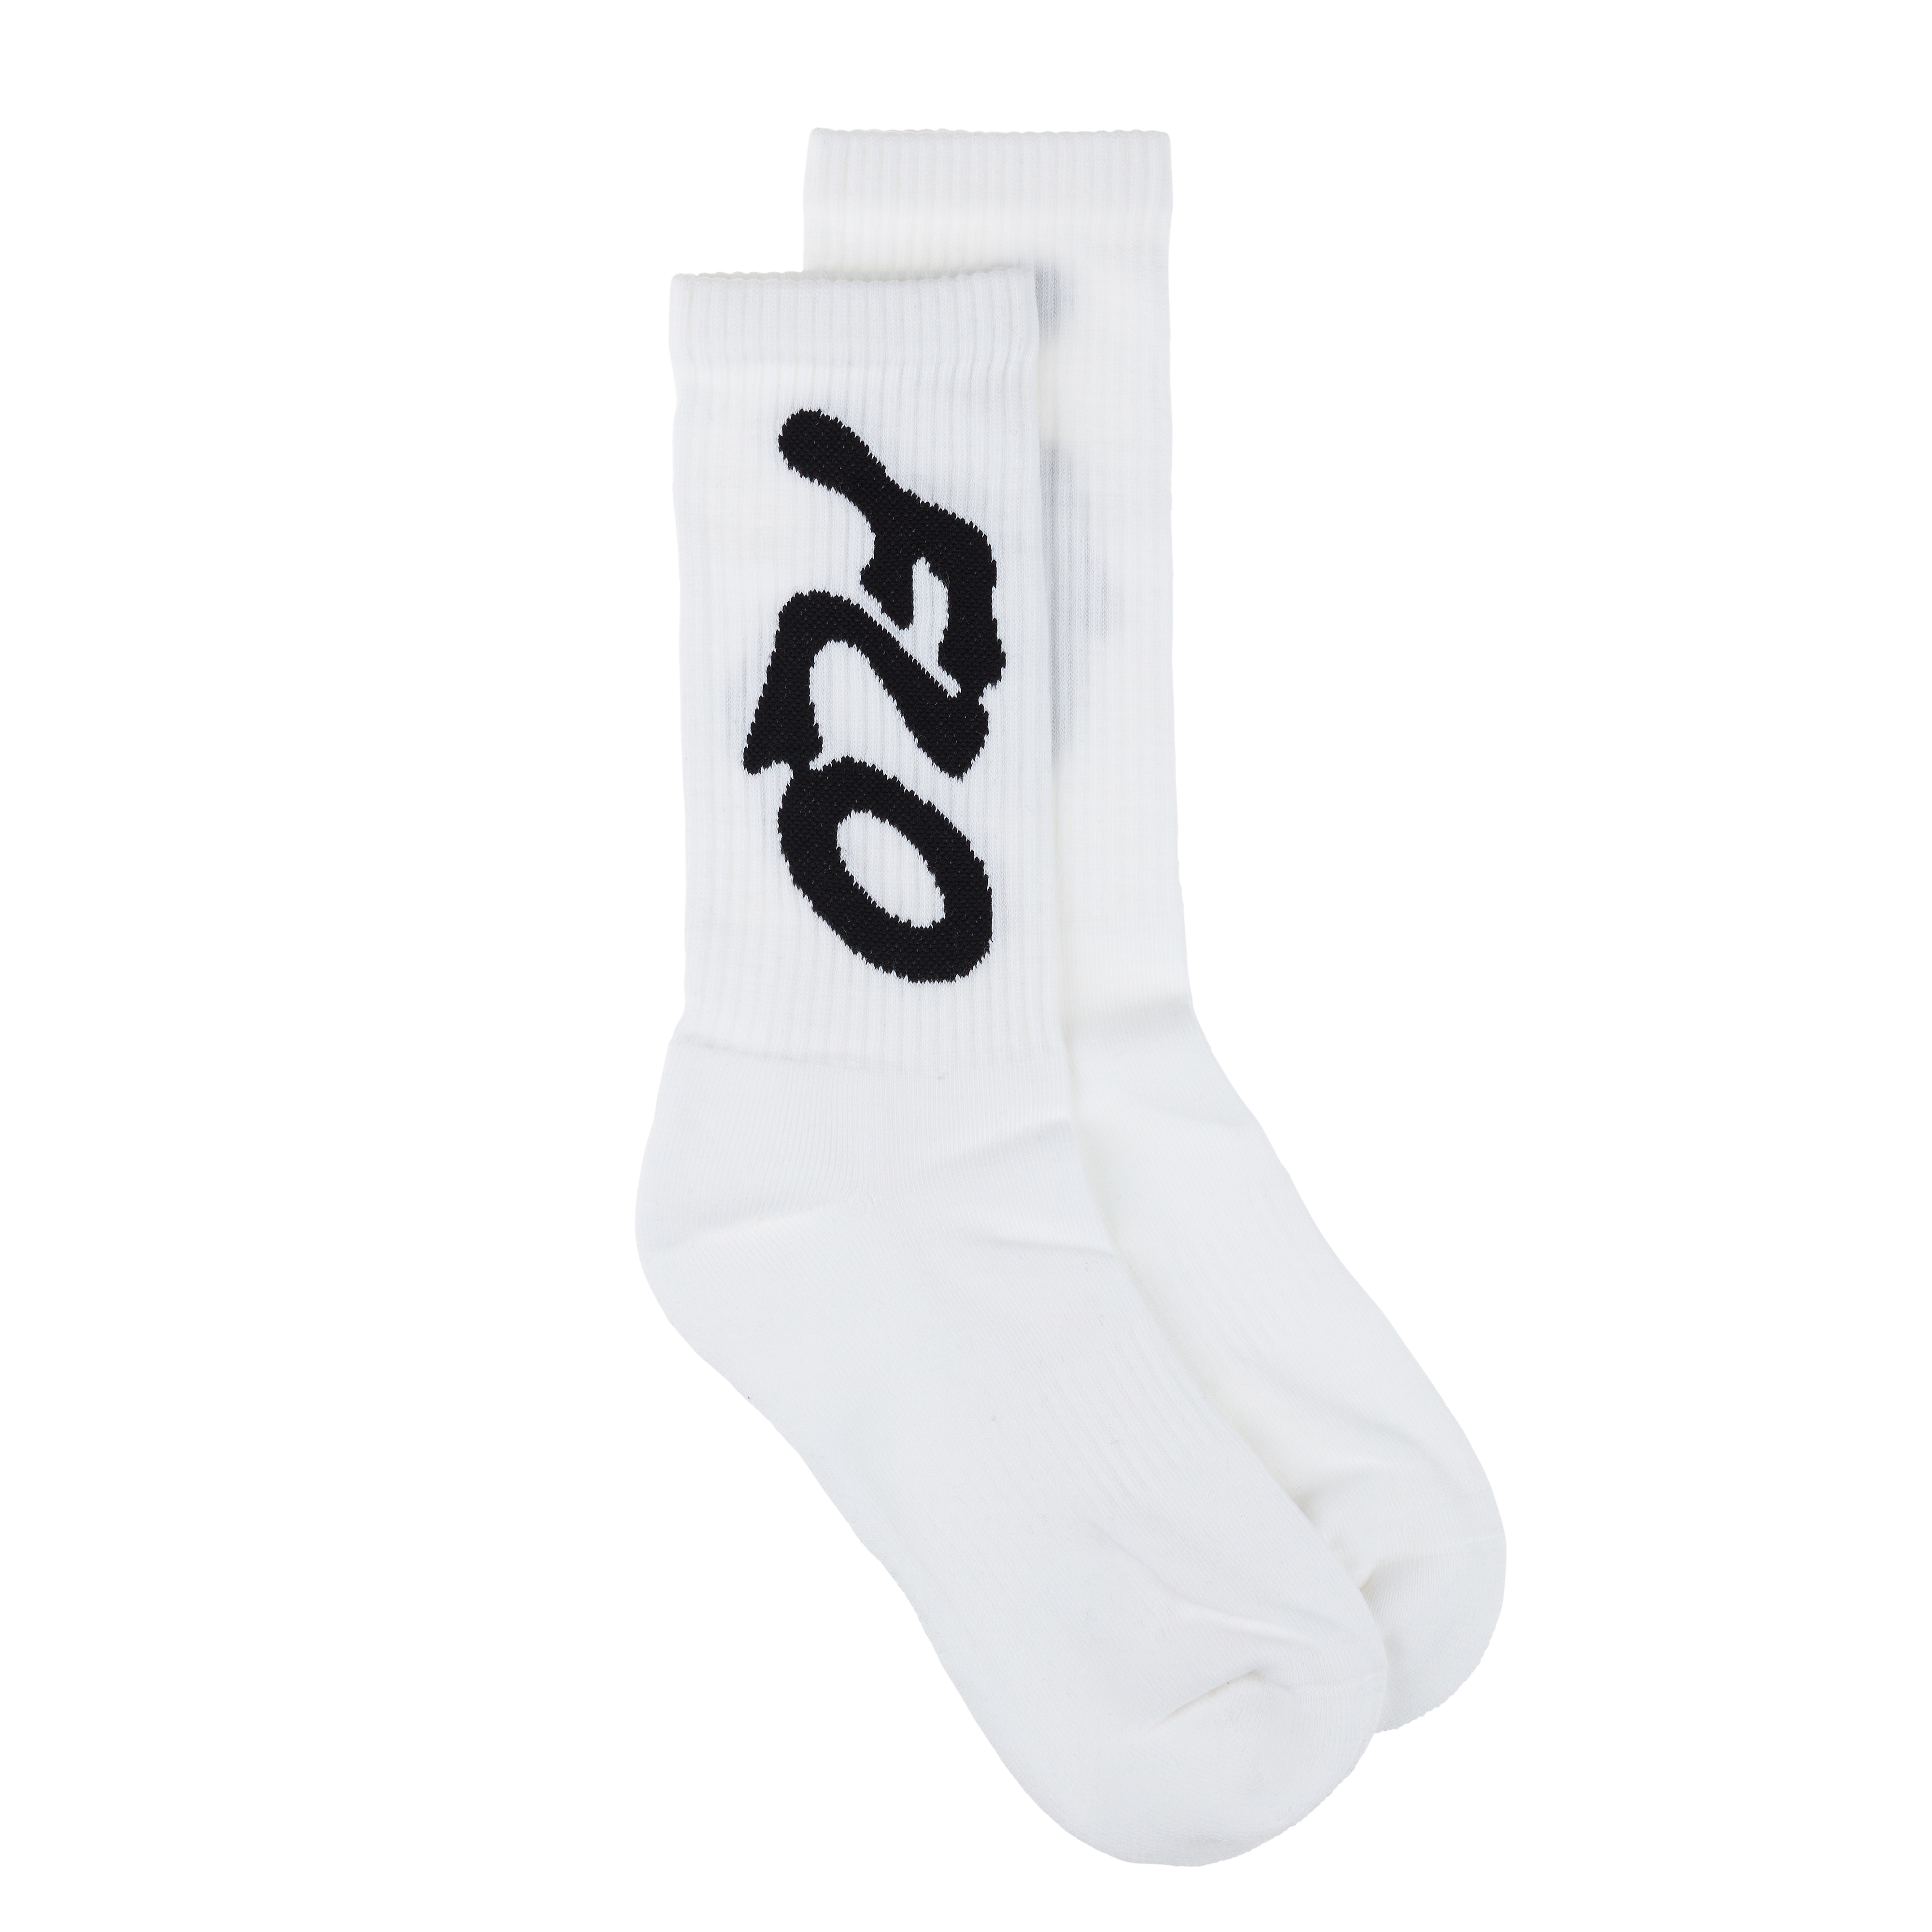 FLO - White FLO socks